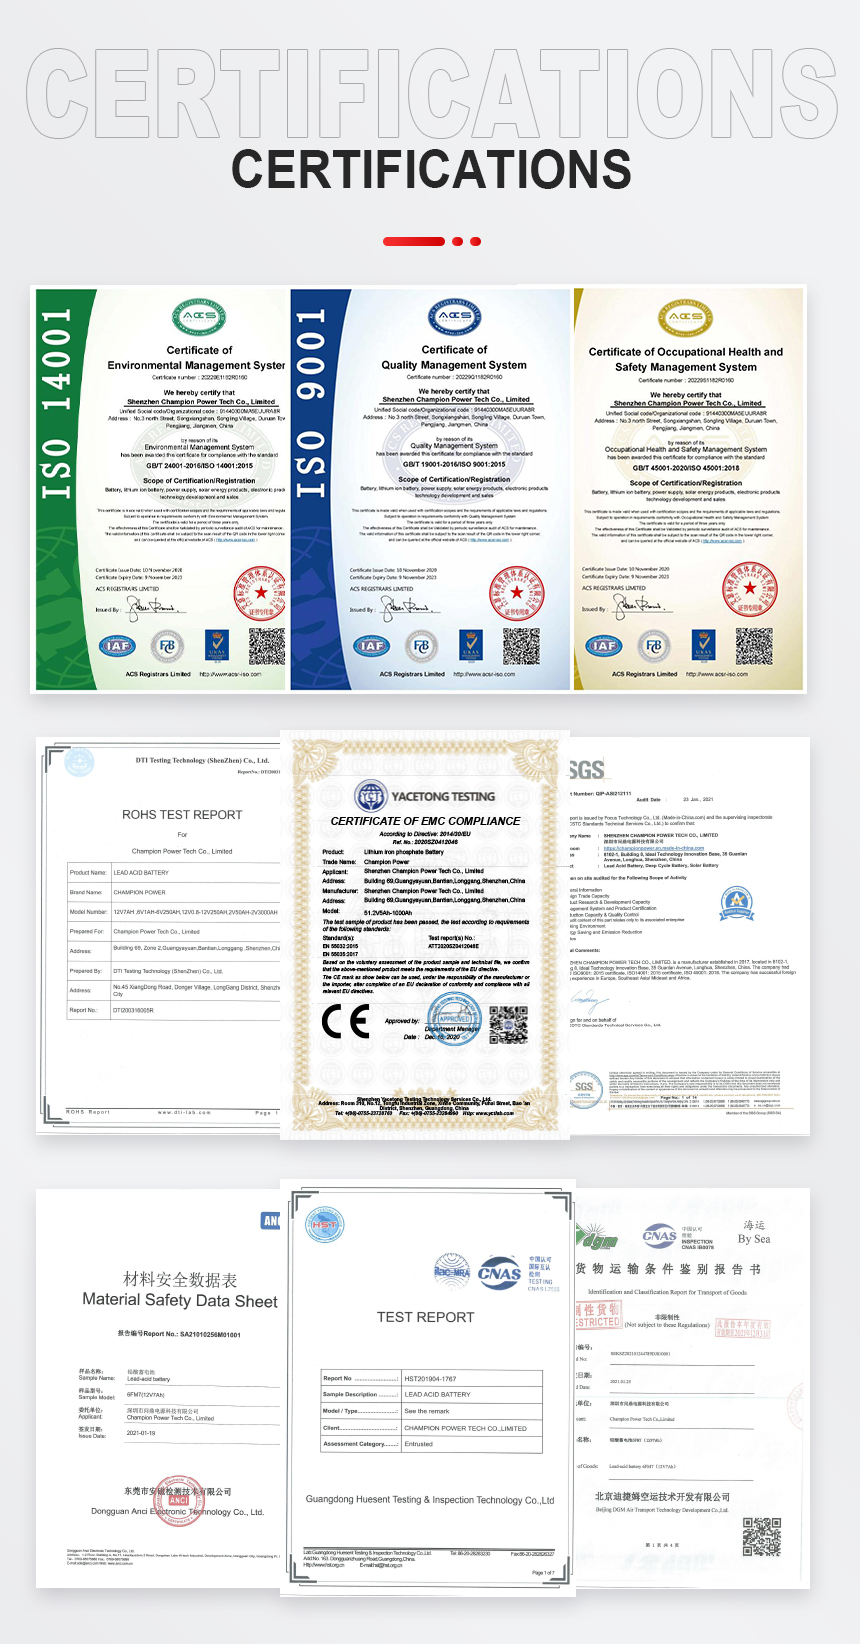 GFM400 Certifications